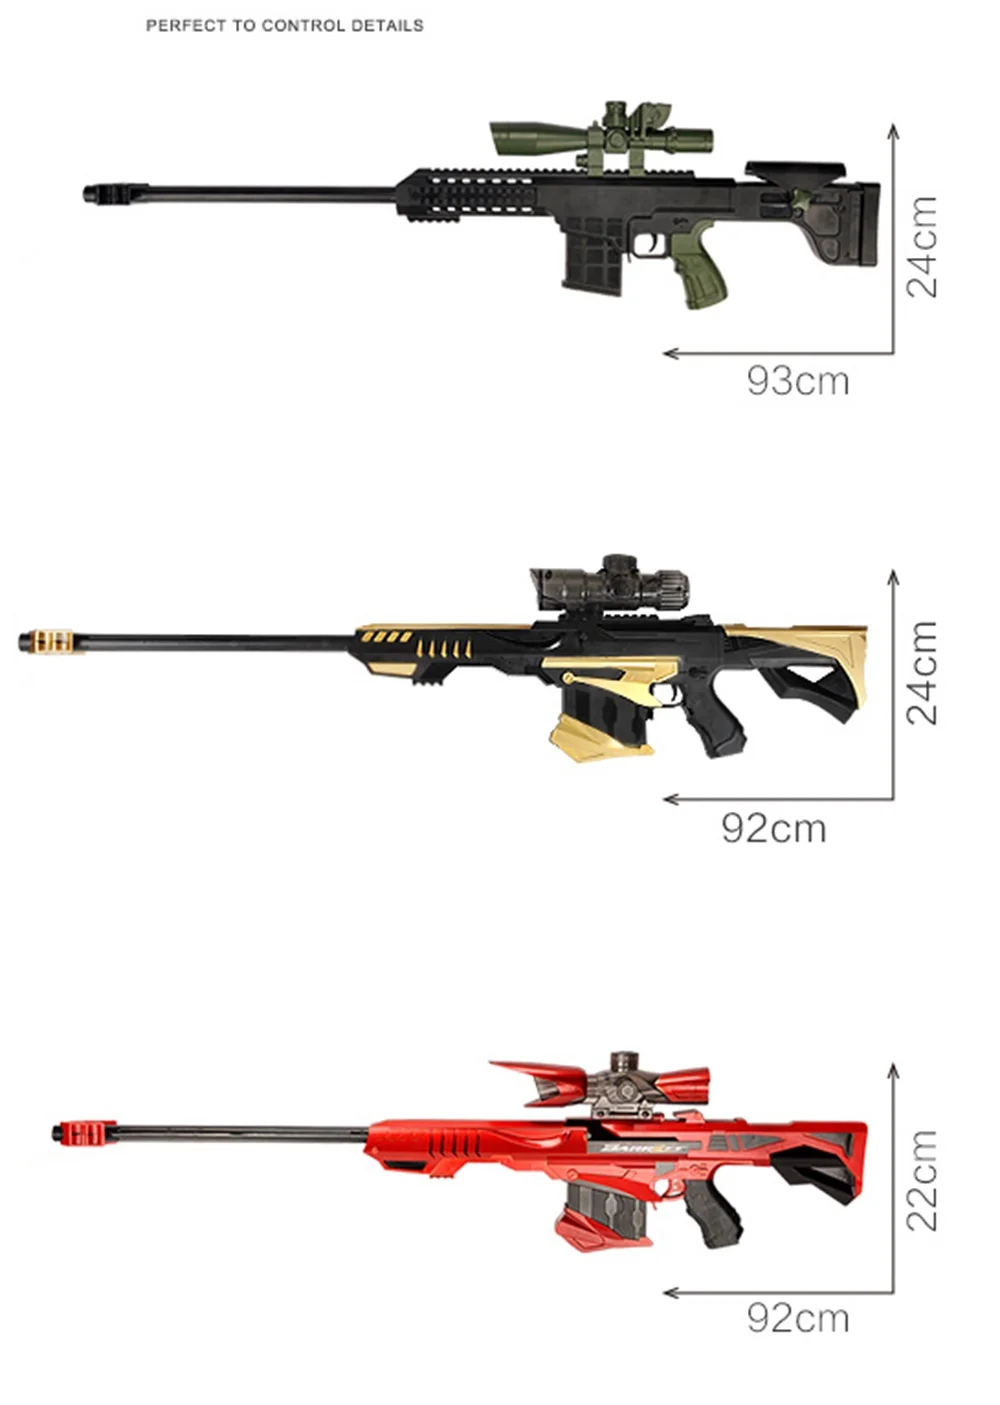 Легко Большой ABS Saftt воды Buttlets детские игрушки пистолеты унисекс дети Airsoft пистолет игрушка TH0001-1